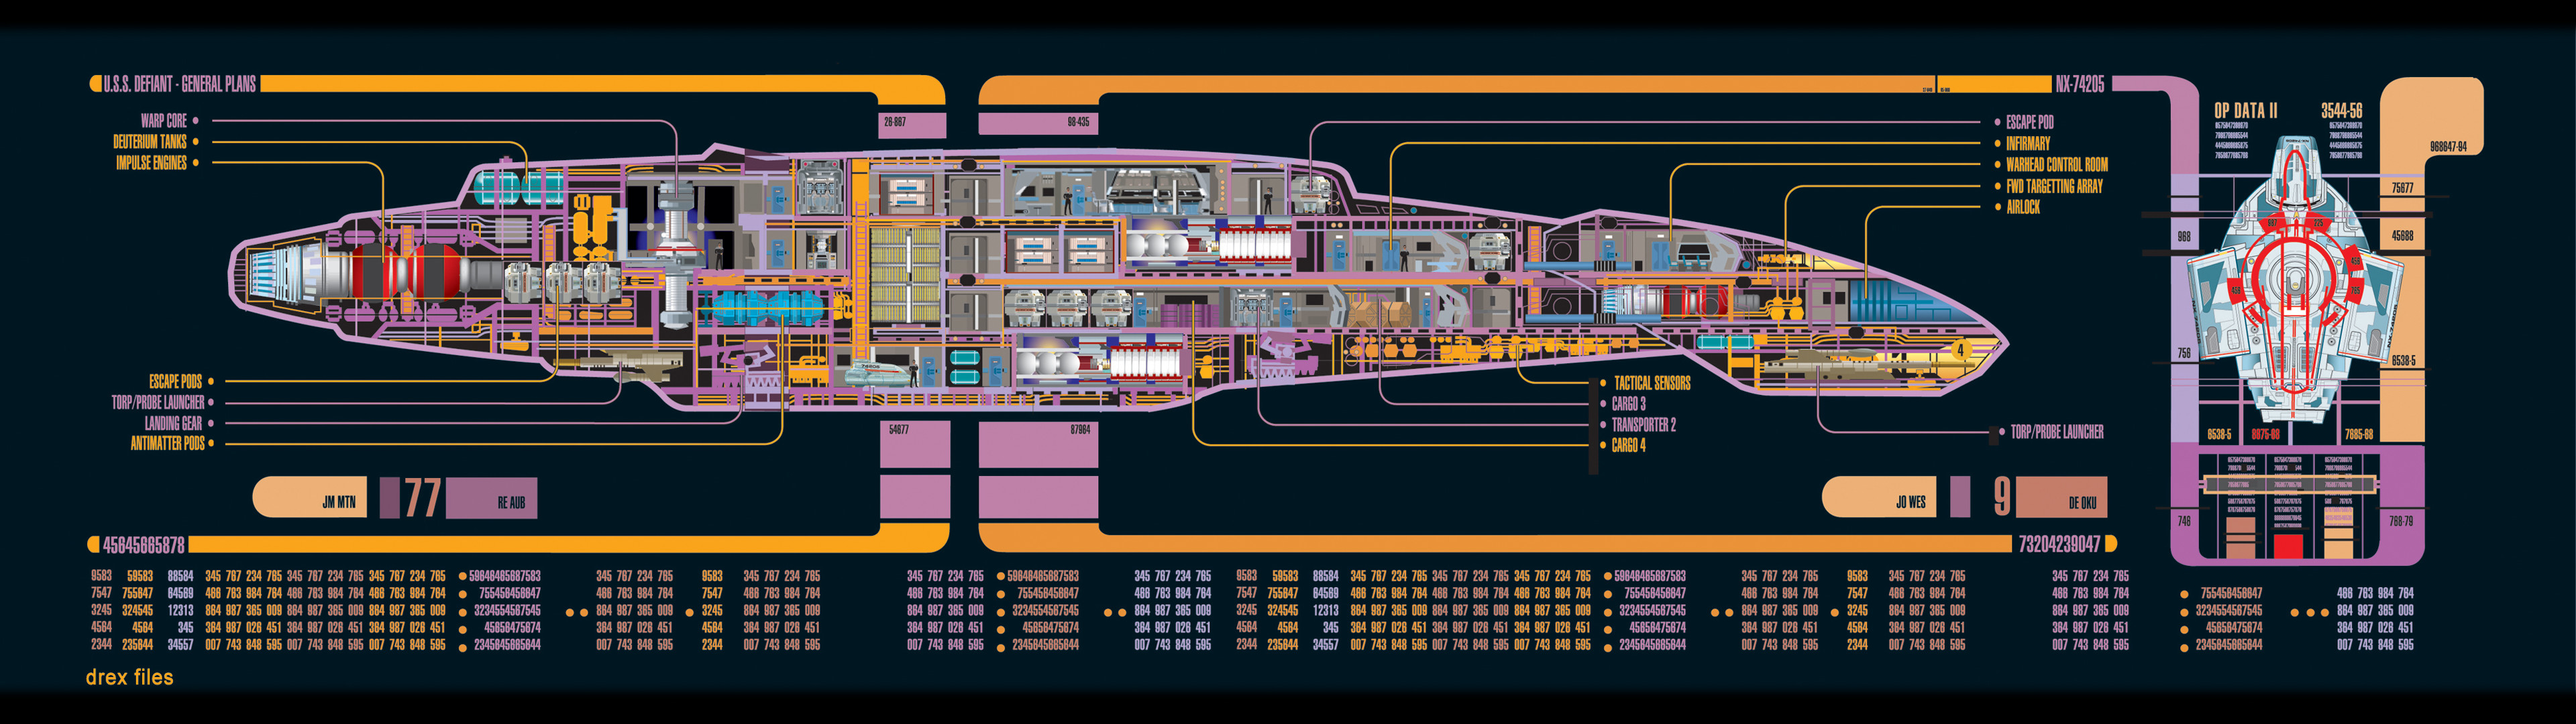 Star Trek Computer Wallpapers, Desktop Backgrounds ID